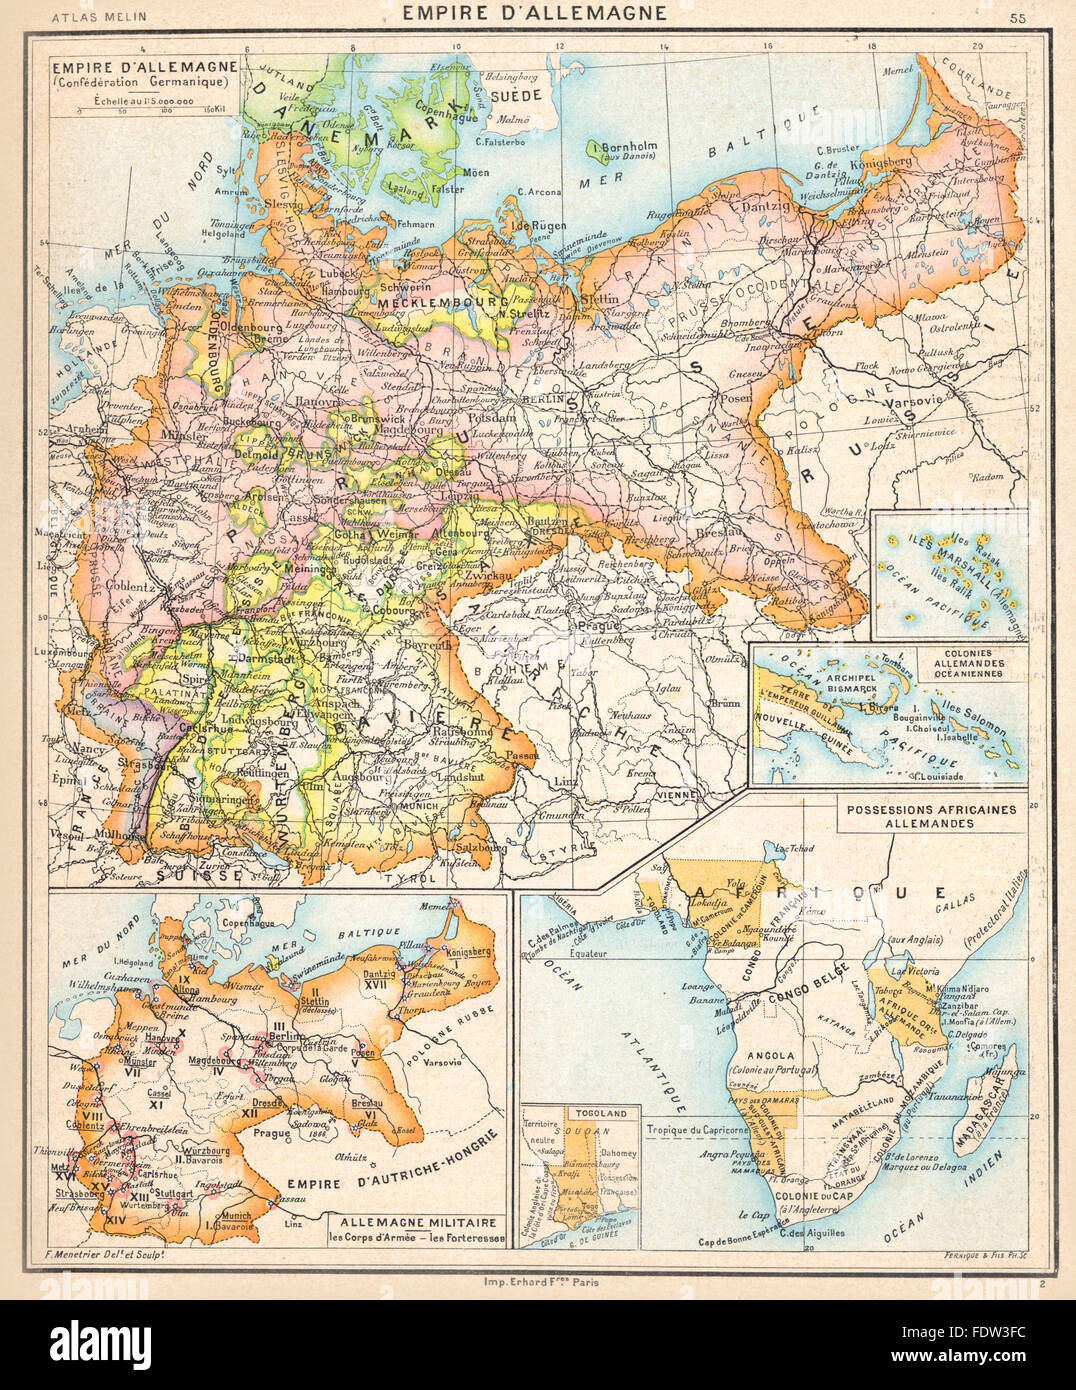 Deutschland: Empire Allemagne Militaire Kolonien Africaines Togoland, Karte 1900 alt Stockfoto